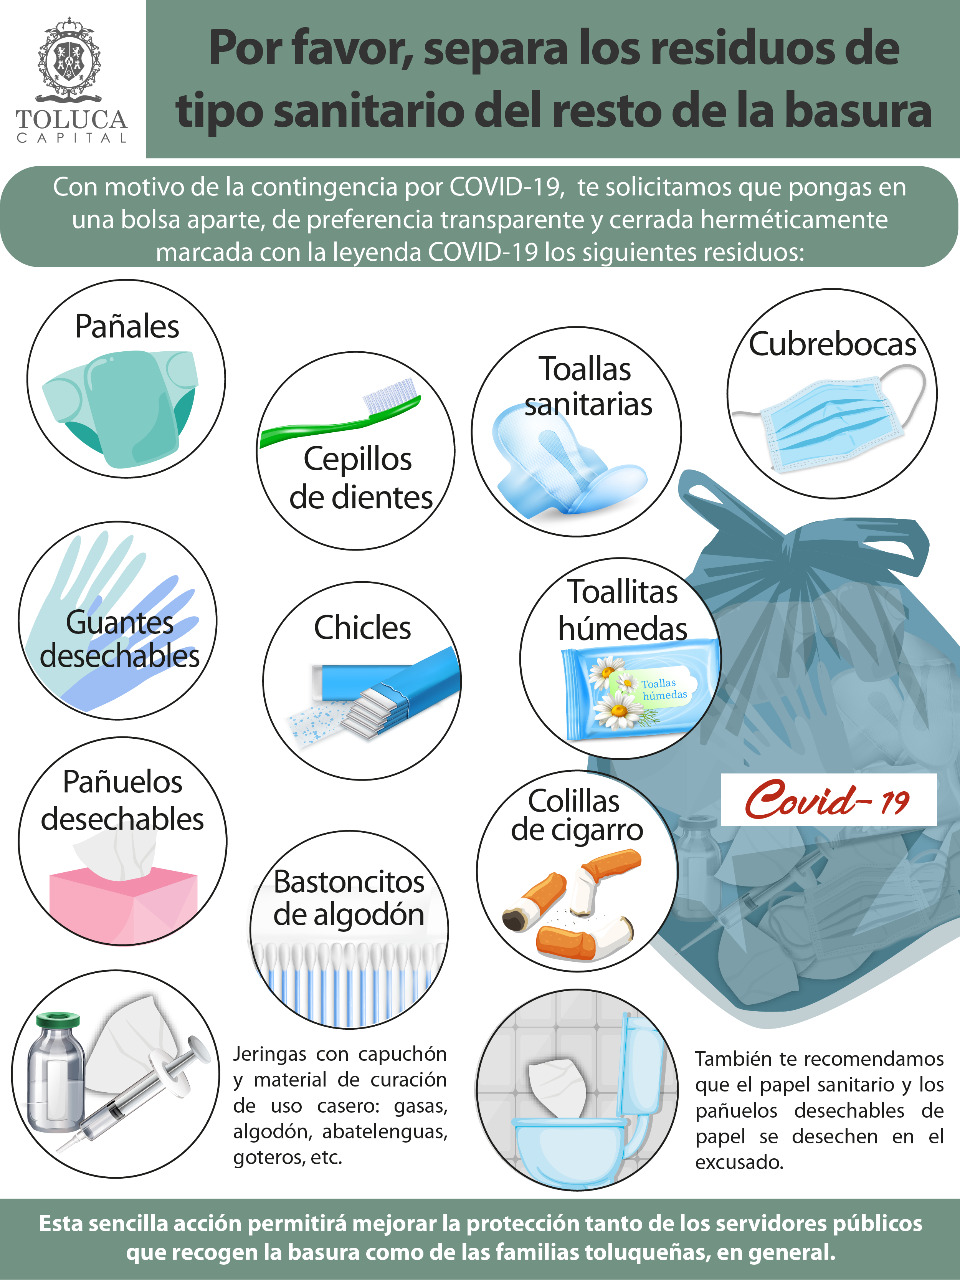 Tus residuos podrían esparcir el COVID-19. ¿Cómo evitarlo?